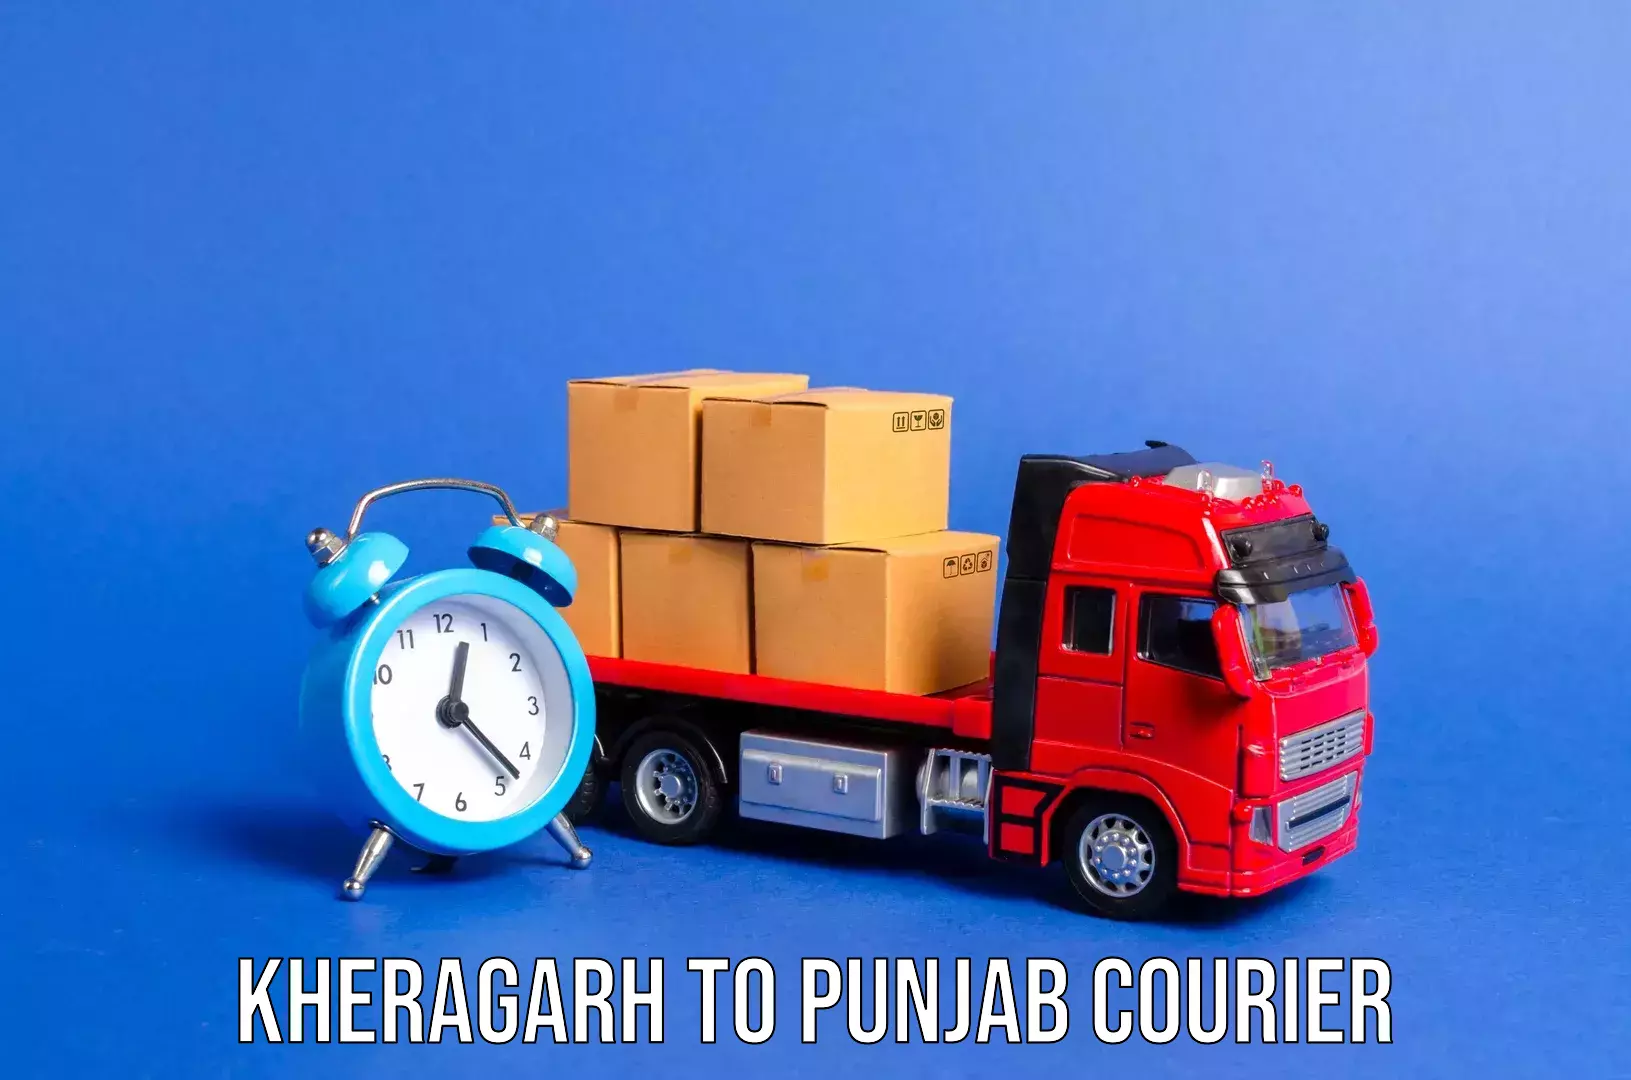 Quick luggage shipment Kheragarh to Kotkapura